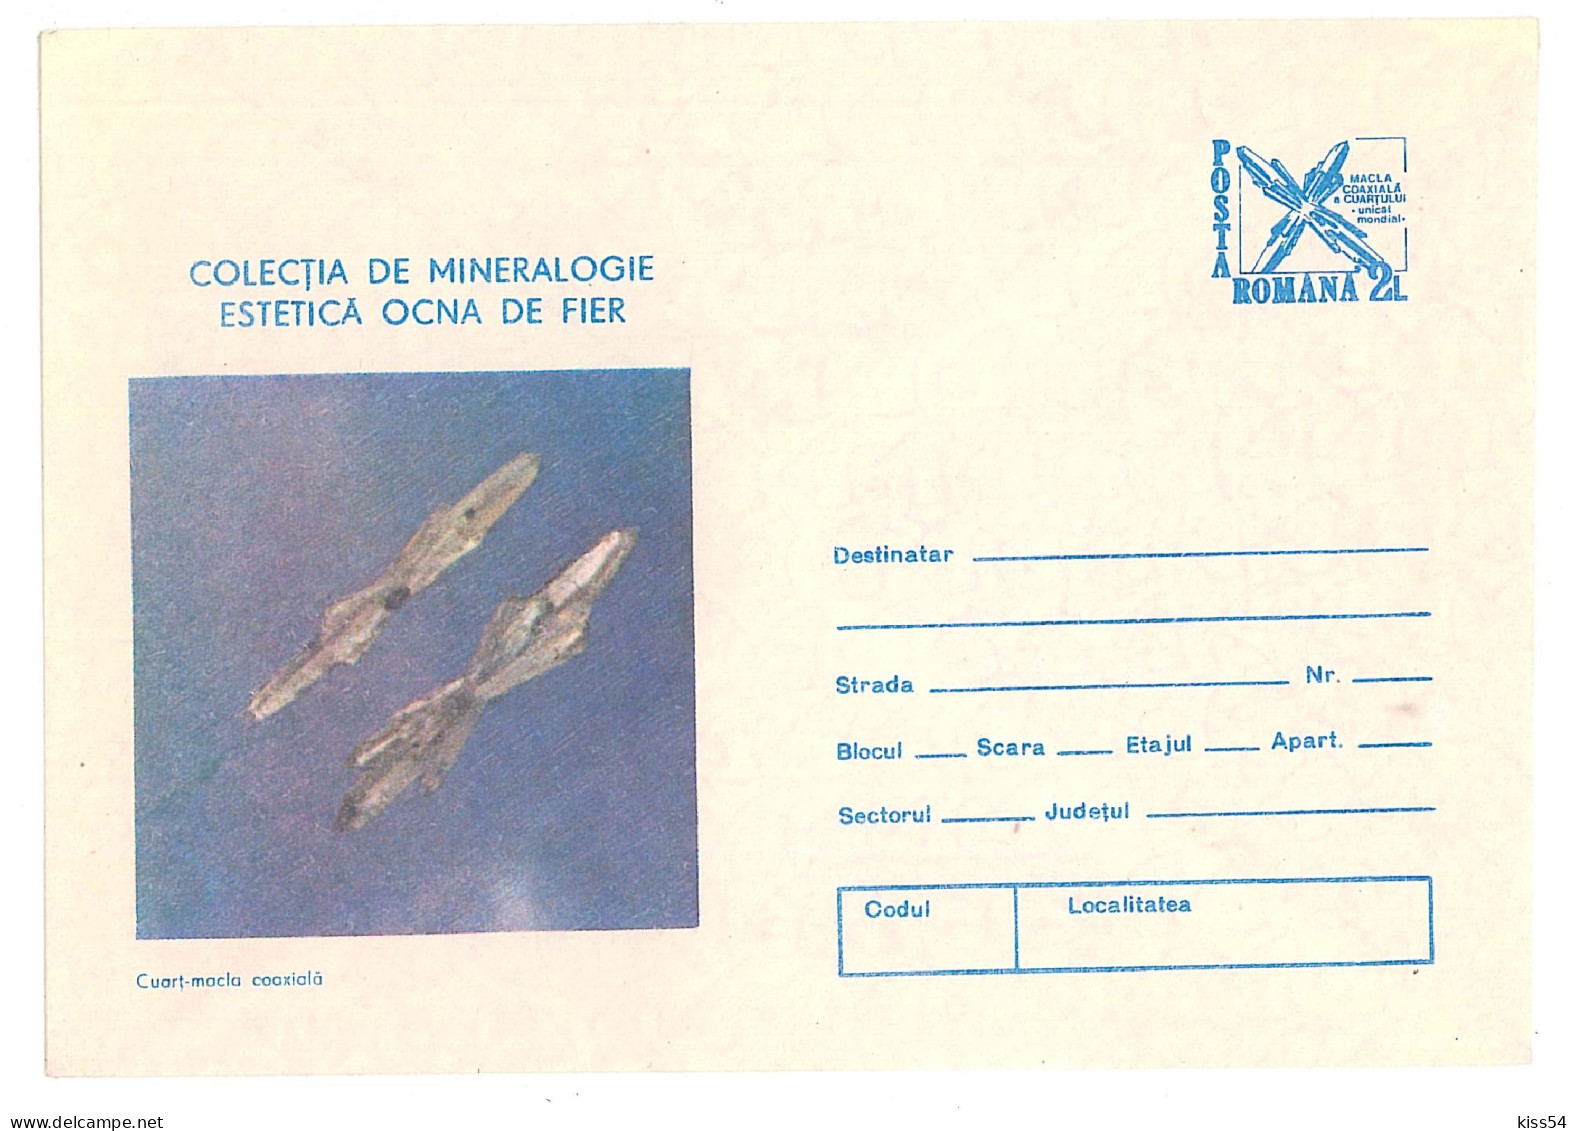 IP 89 -  101 Cuart, MINERALS, Romania - Stationery - Unused - 1989 - Minerals